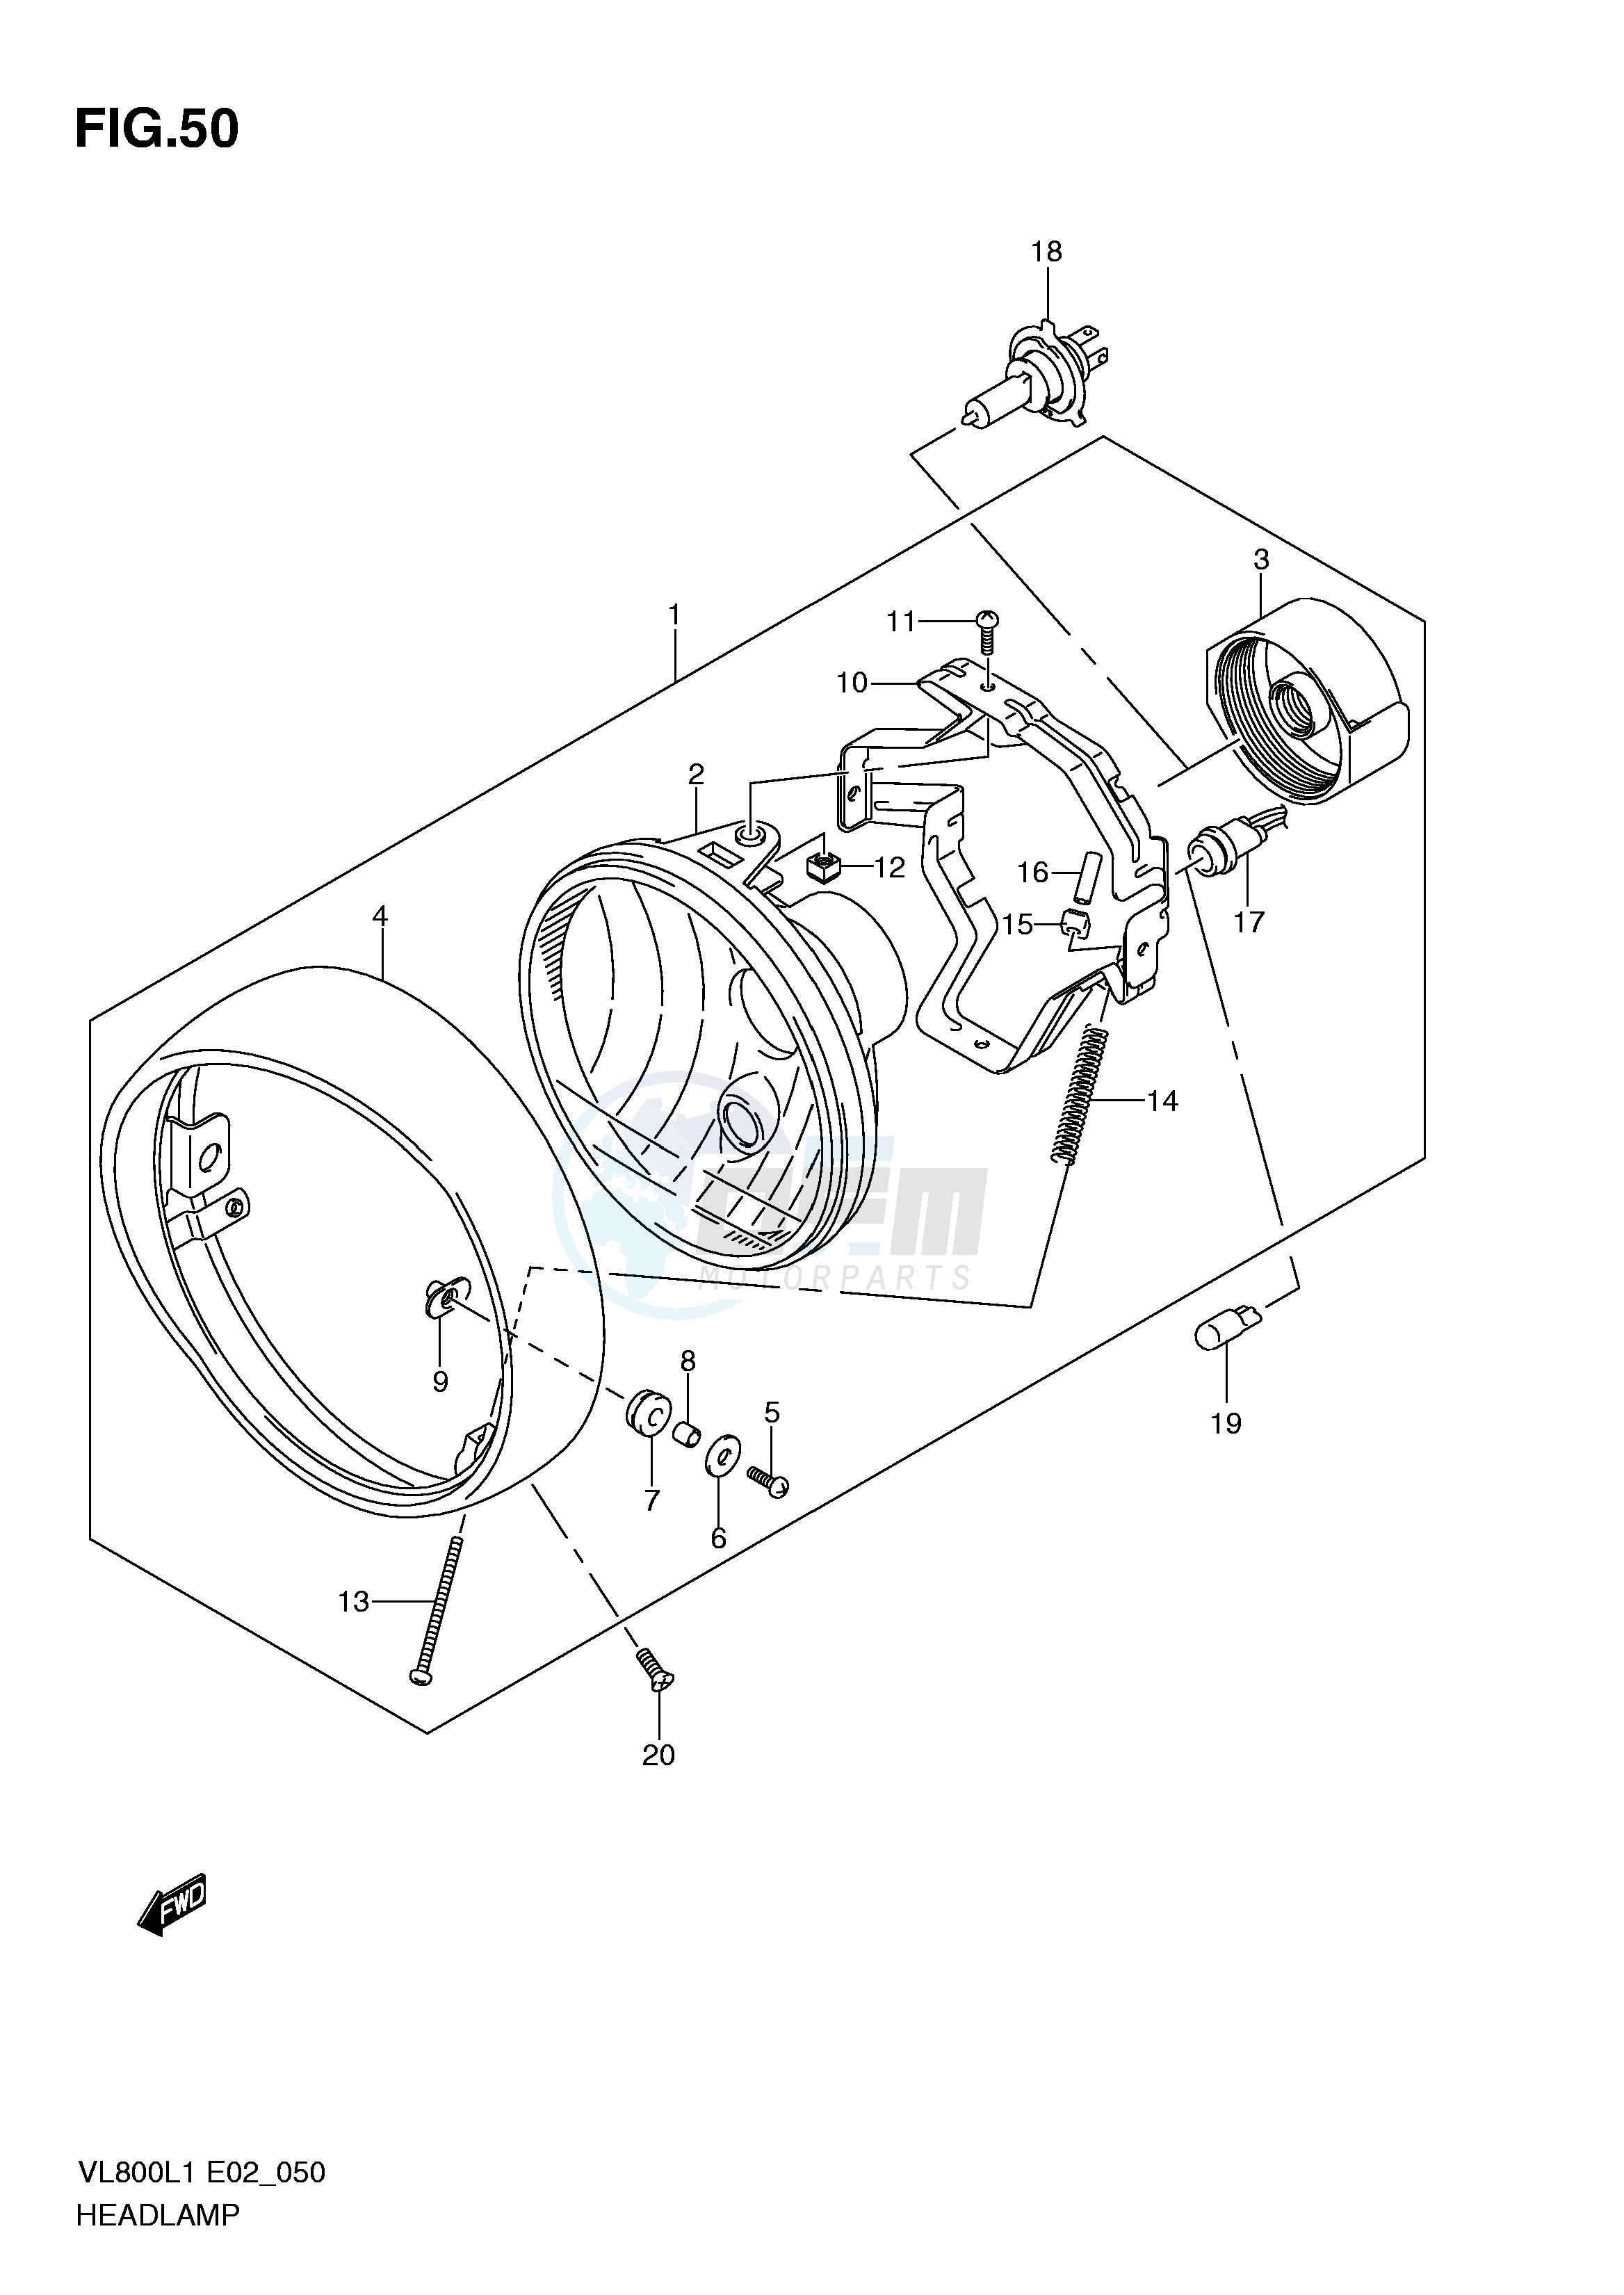 HEADLAMP ASSY (VL800CL1 E19) blueprint